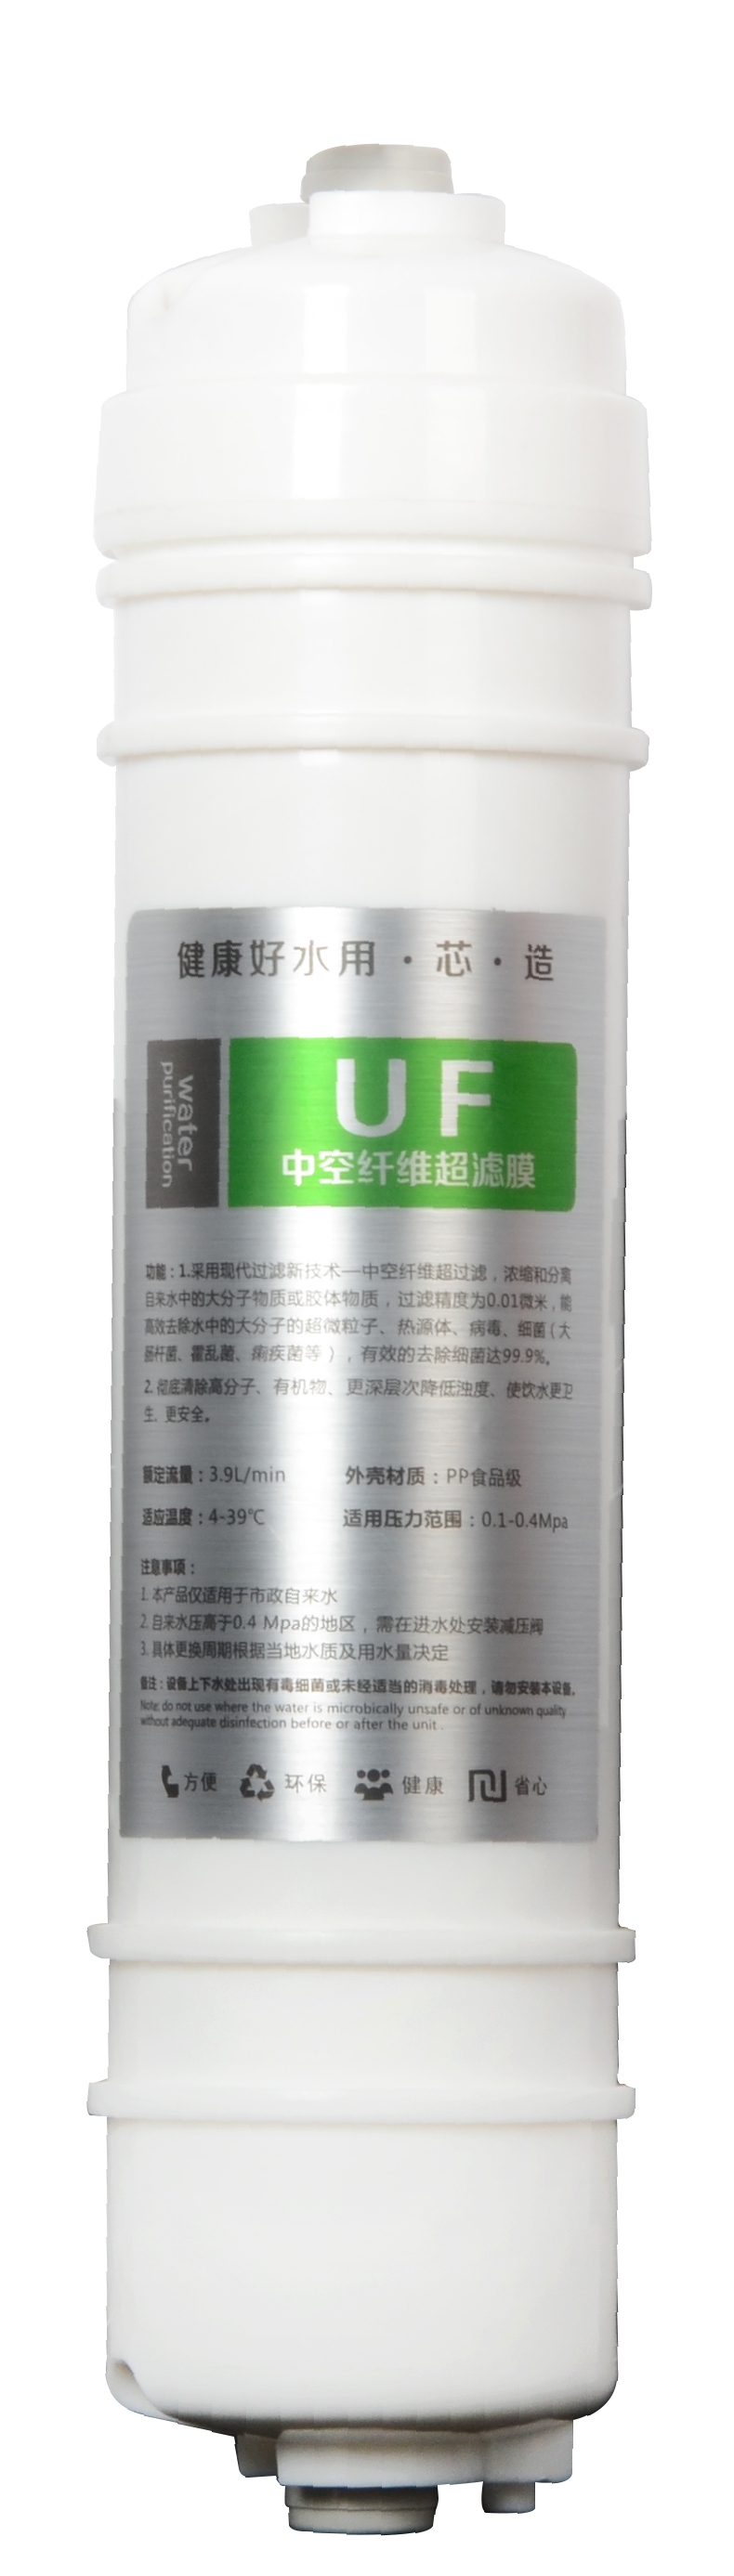 韩式UF超滤滤芯 广东厂家价格  韩式滤芯厂家直销报价图片